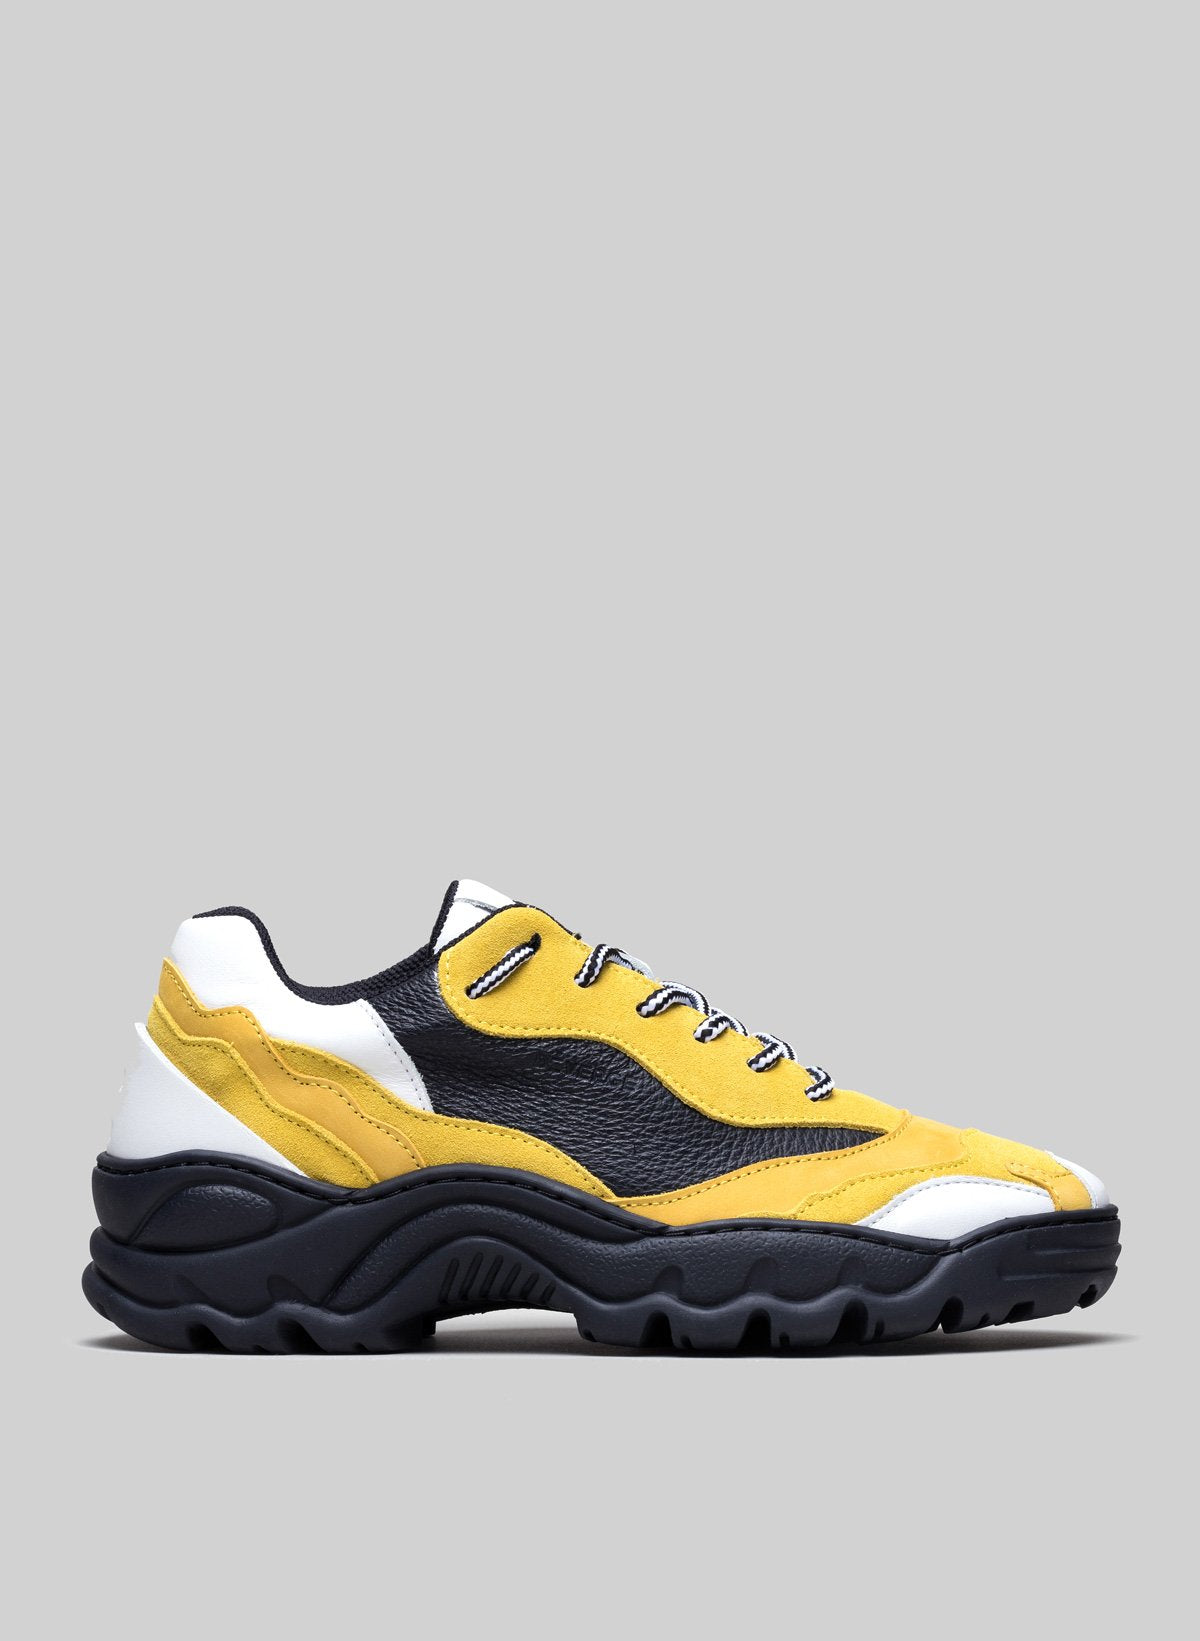 Low top giallo e bianco sneakers con suola nera, scarpe personalizzate da Diverge.